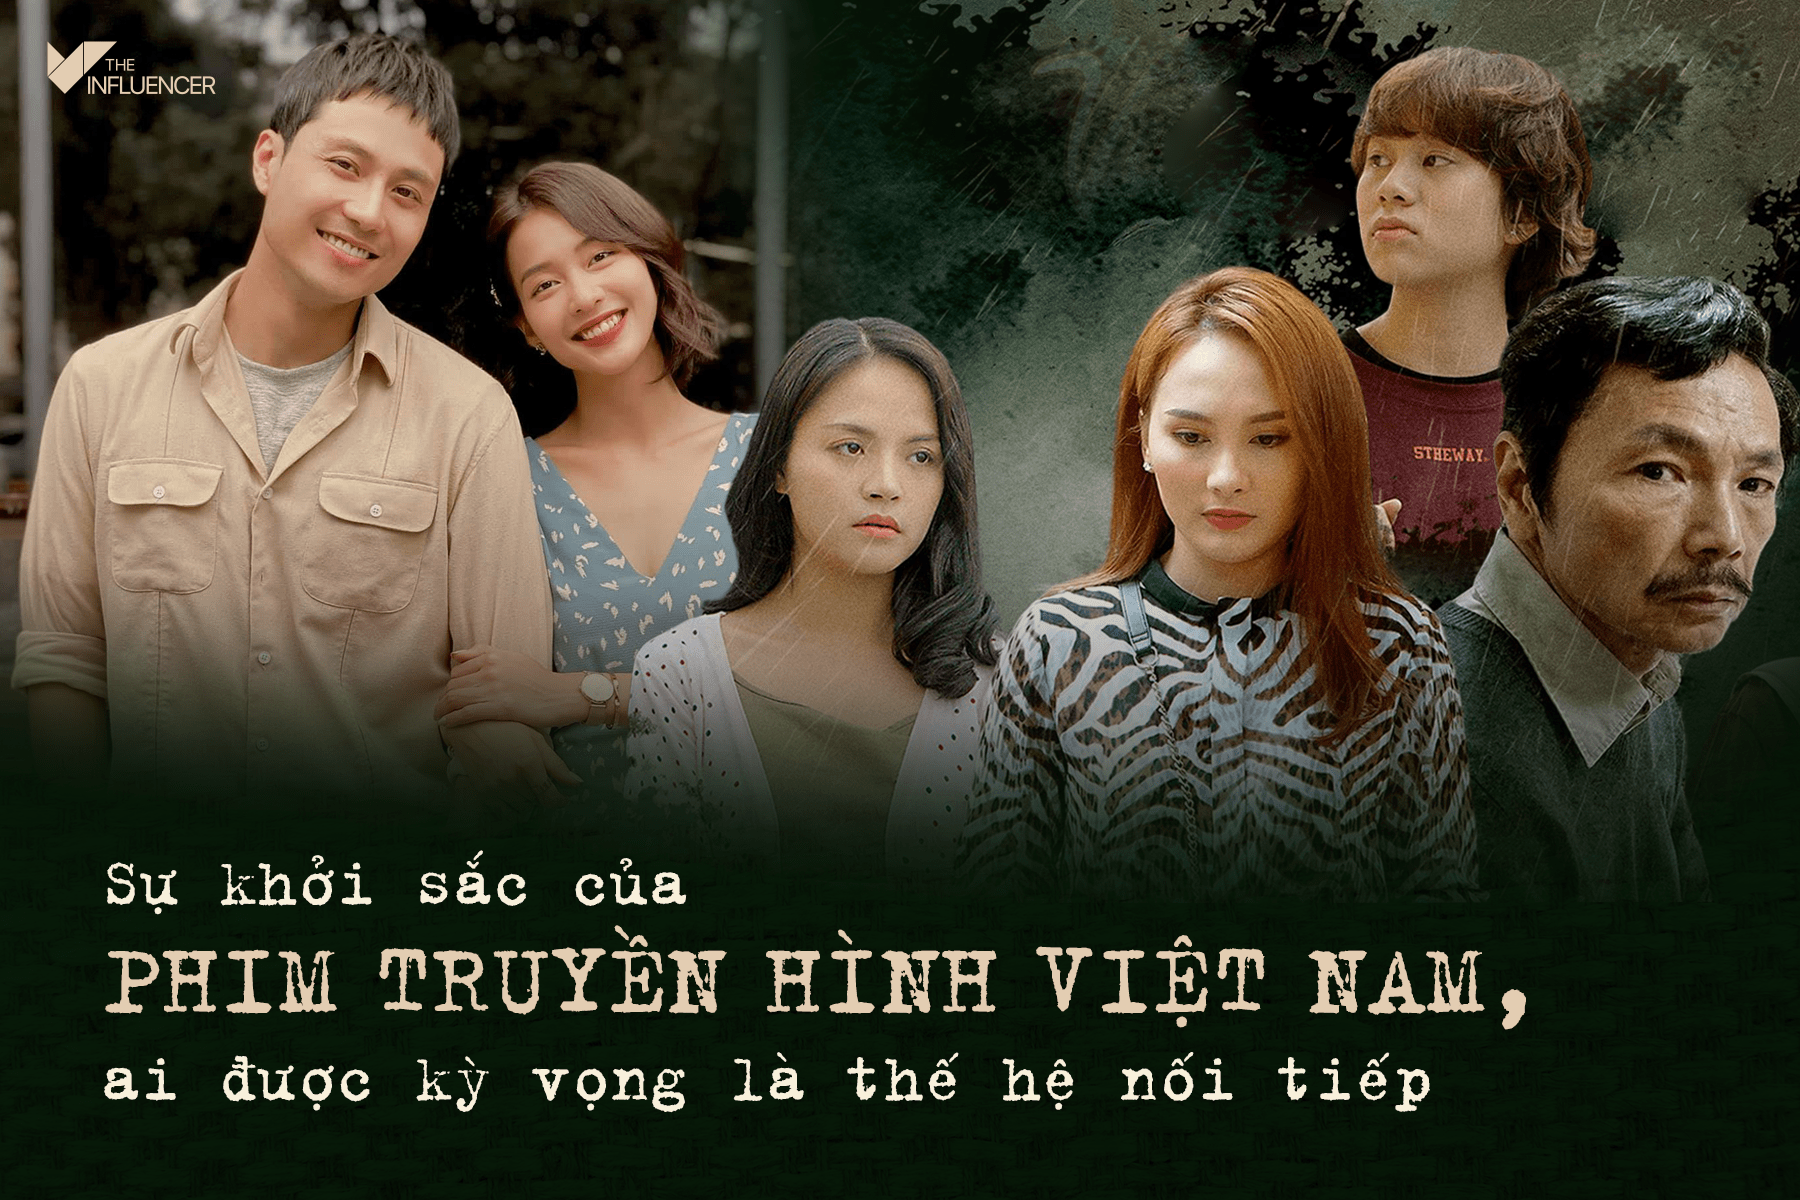 Sự khởi sắc của phim truyền hình Việt Nam, ai được kỳ vọng là thế hệ nối tiếp?